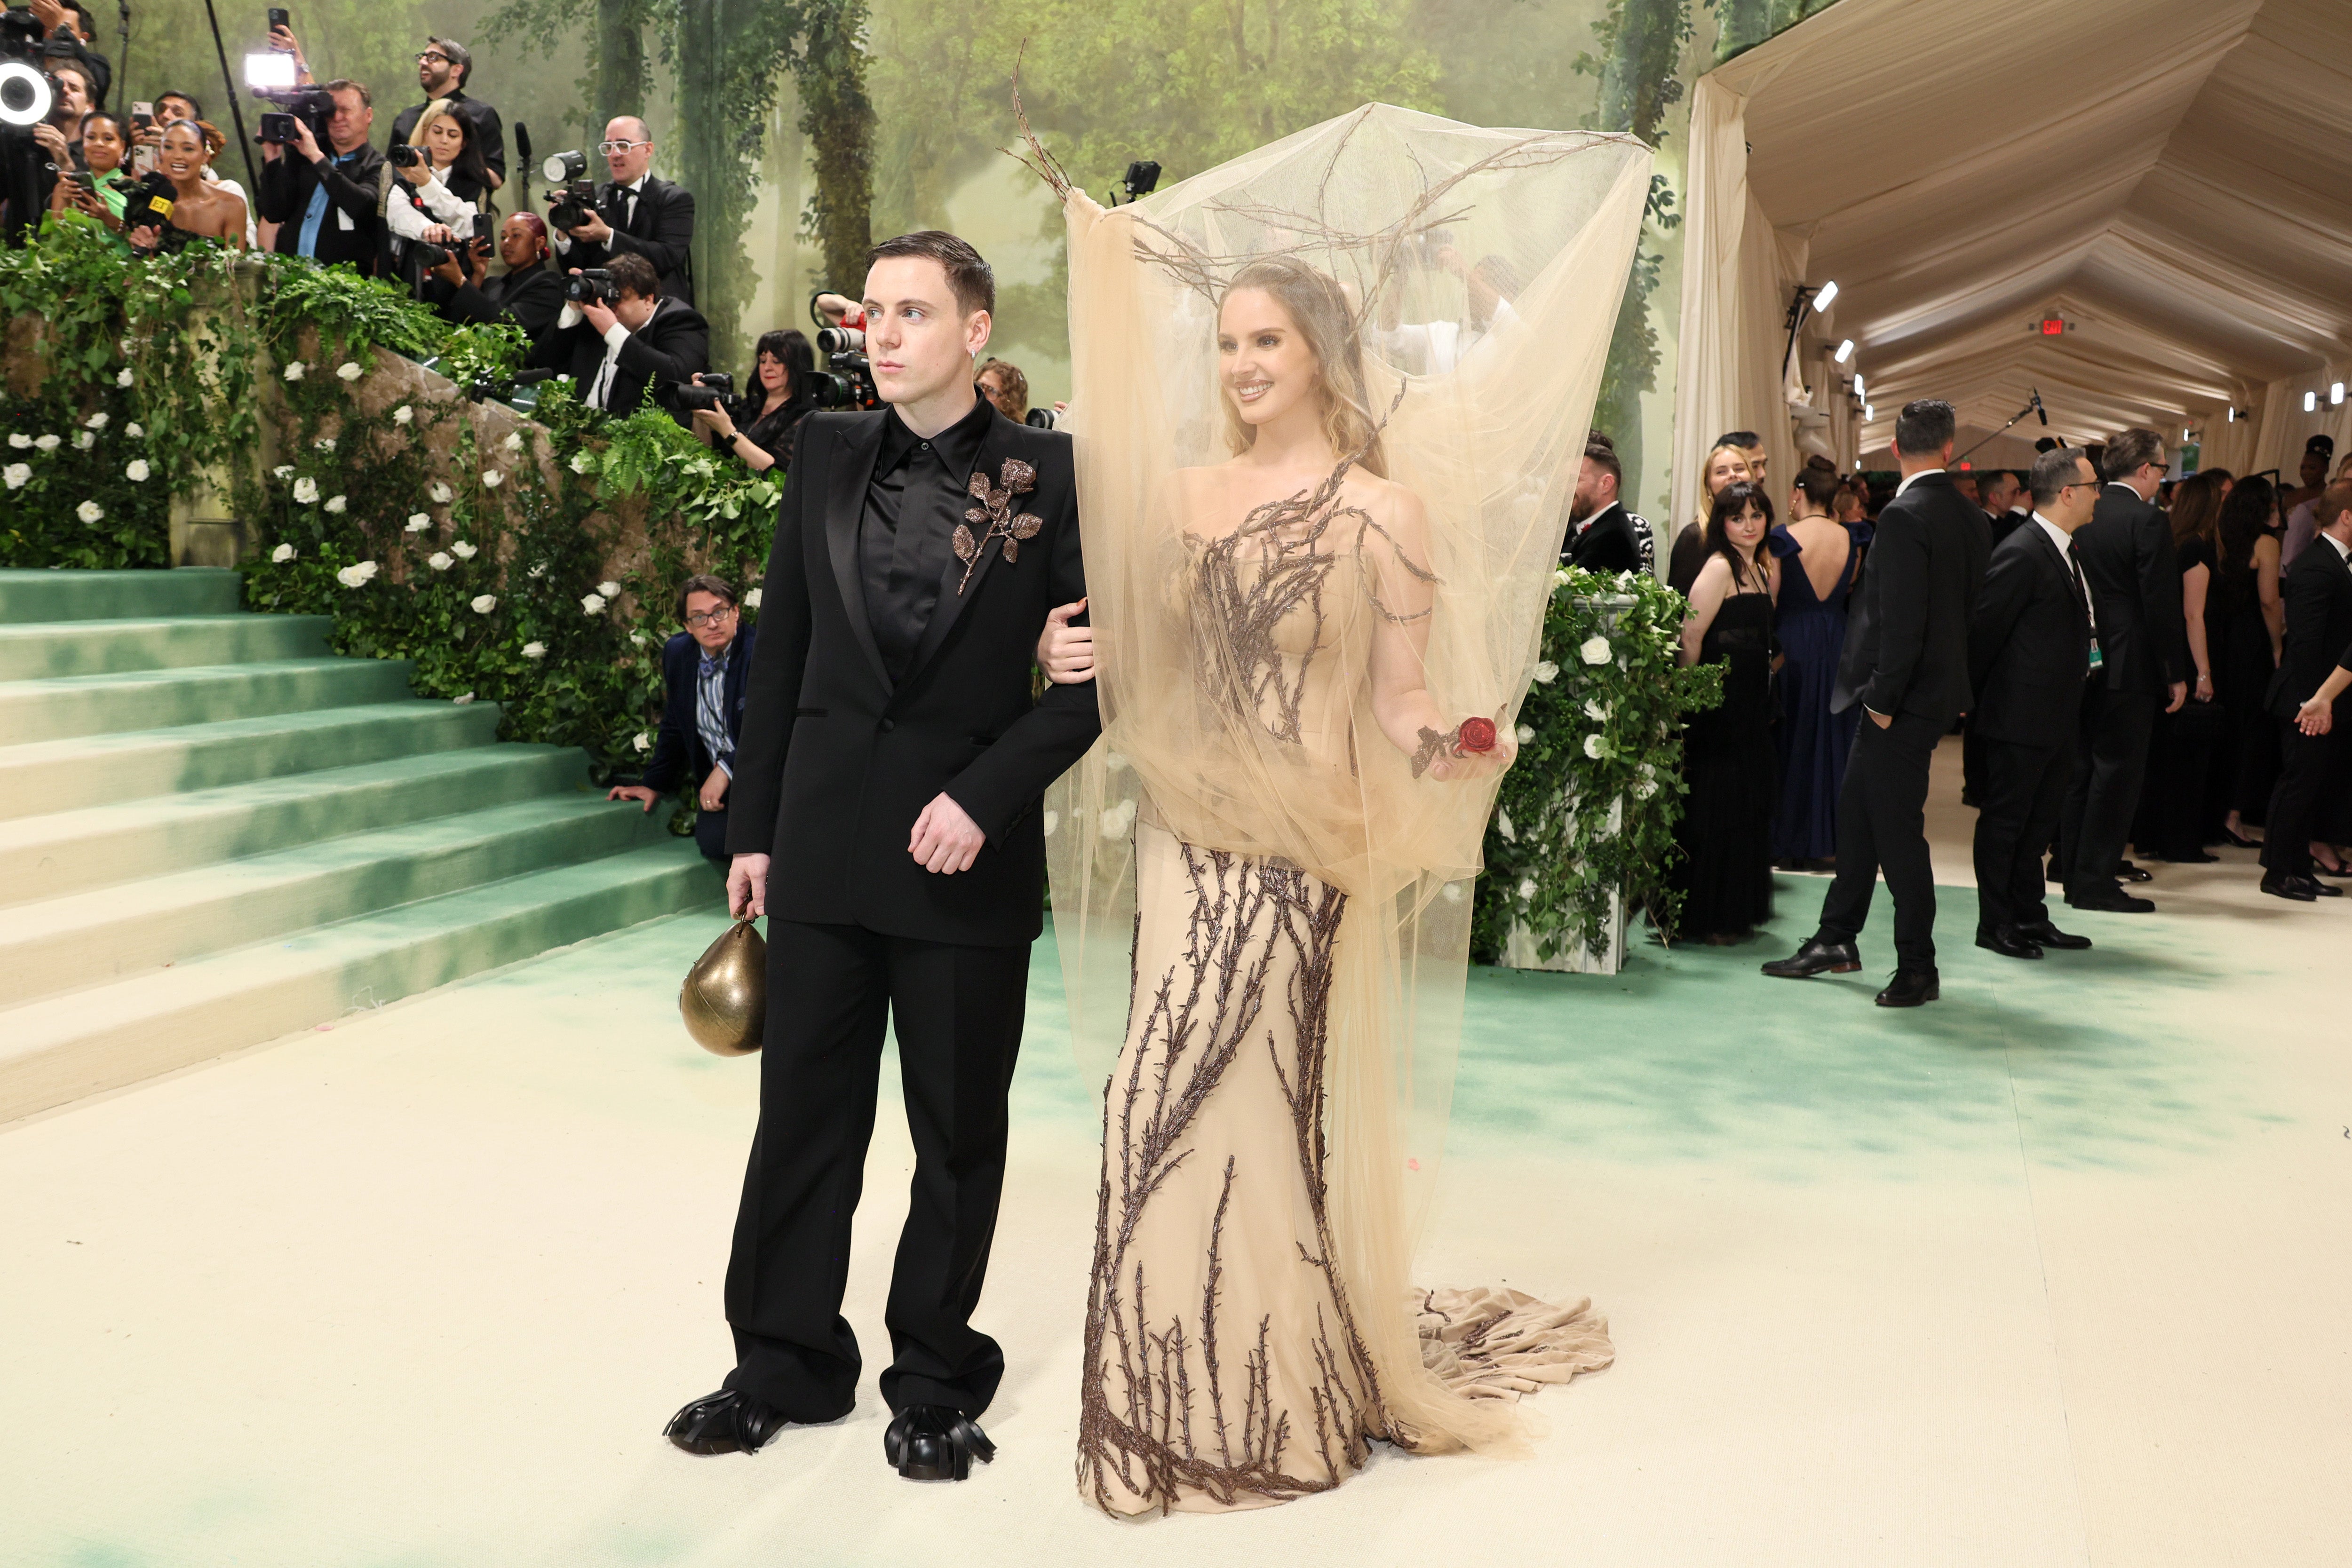 Lana Del Rey wears Alexander McQueen to the Met Gala